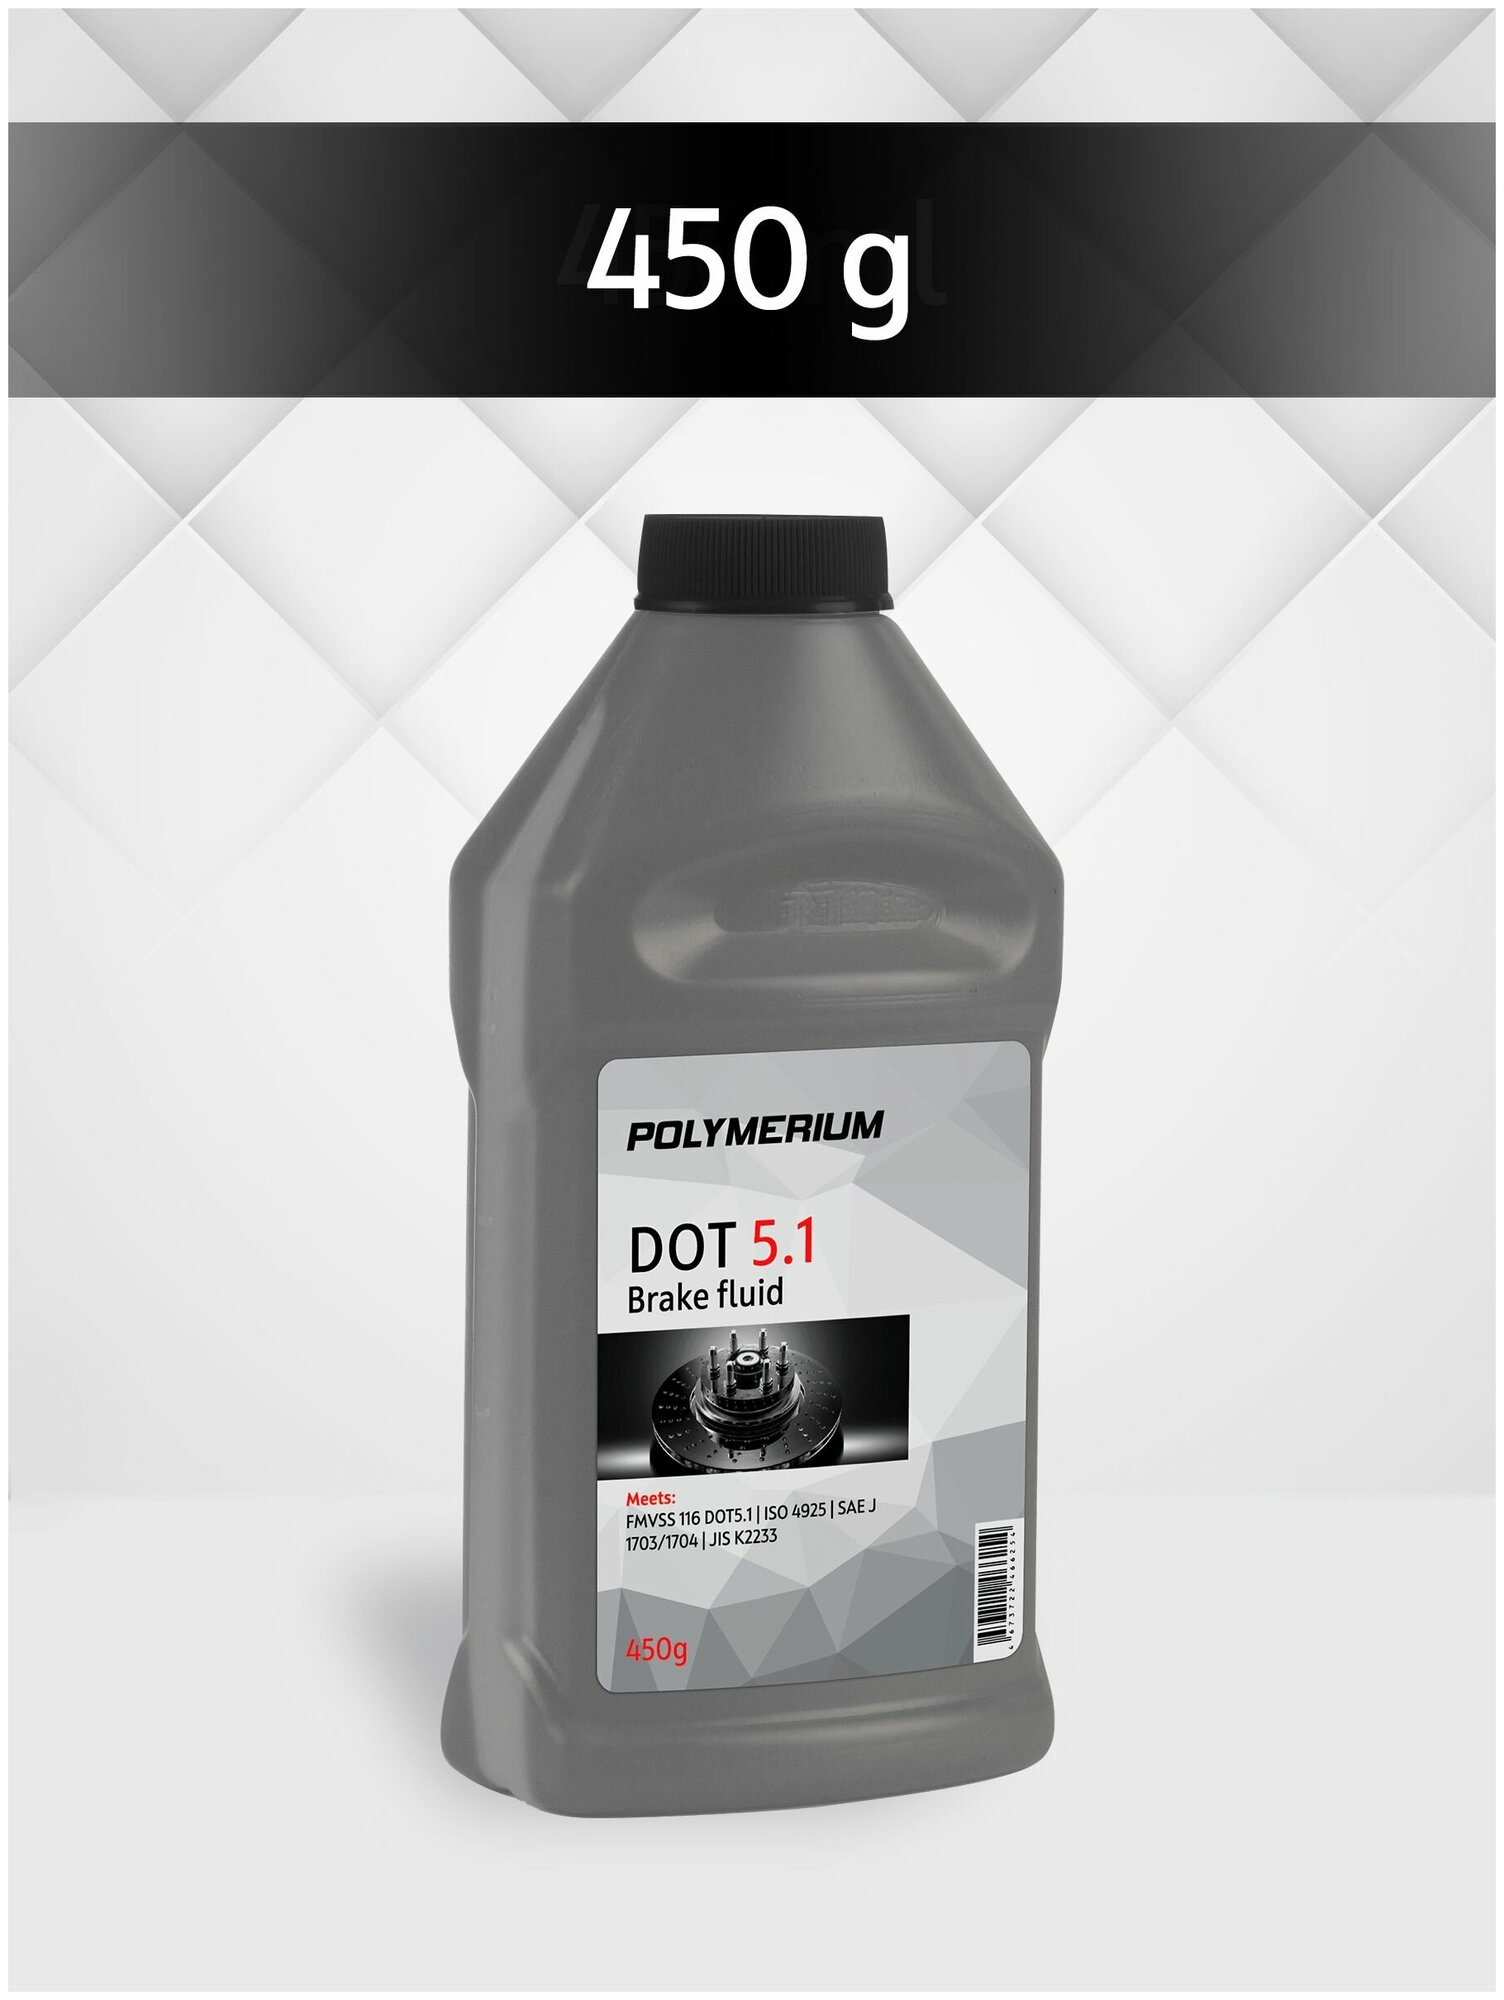 Тормозная жидкость POLYMERIUM класса DOT 5.1, жидкость для автомобиля дот 5.1, 450г